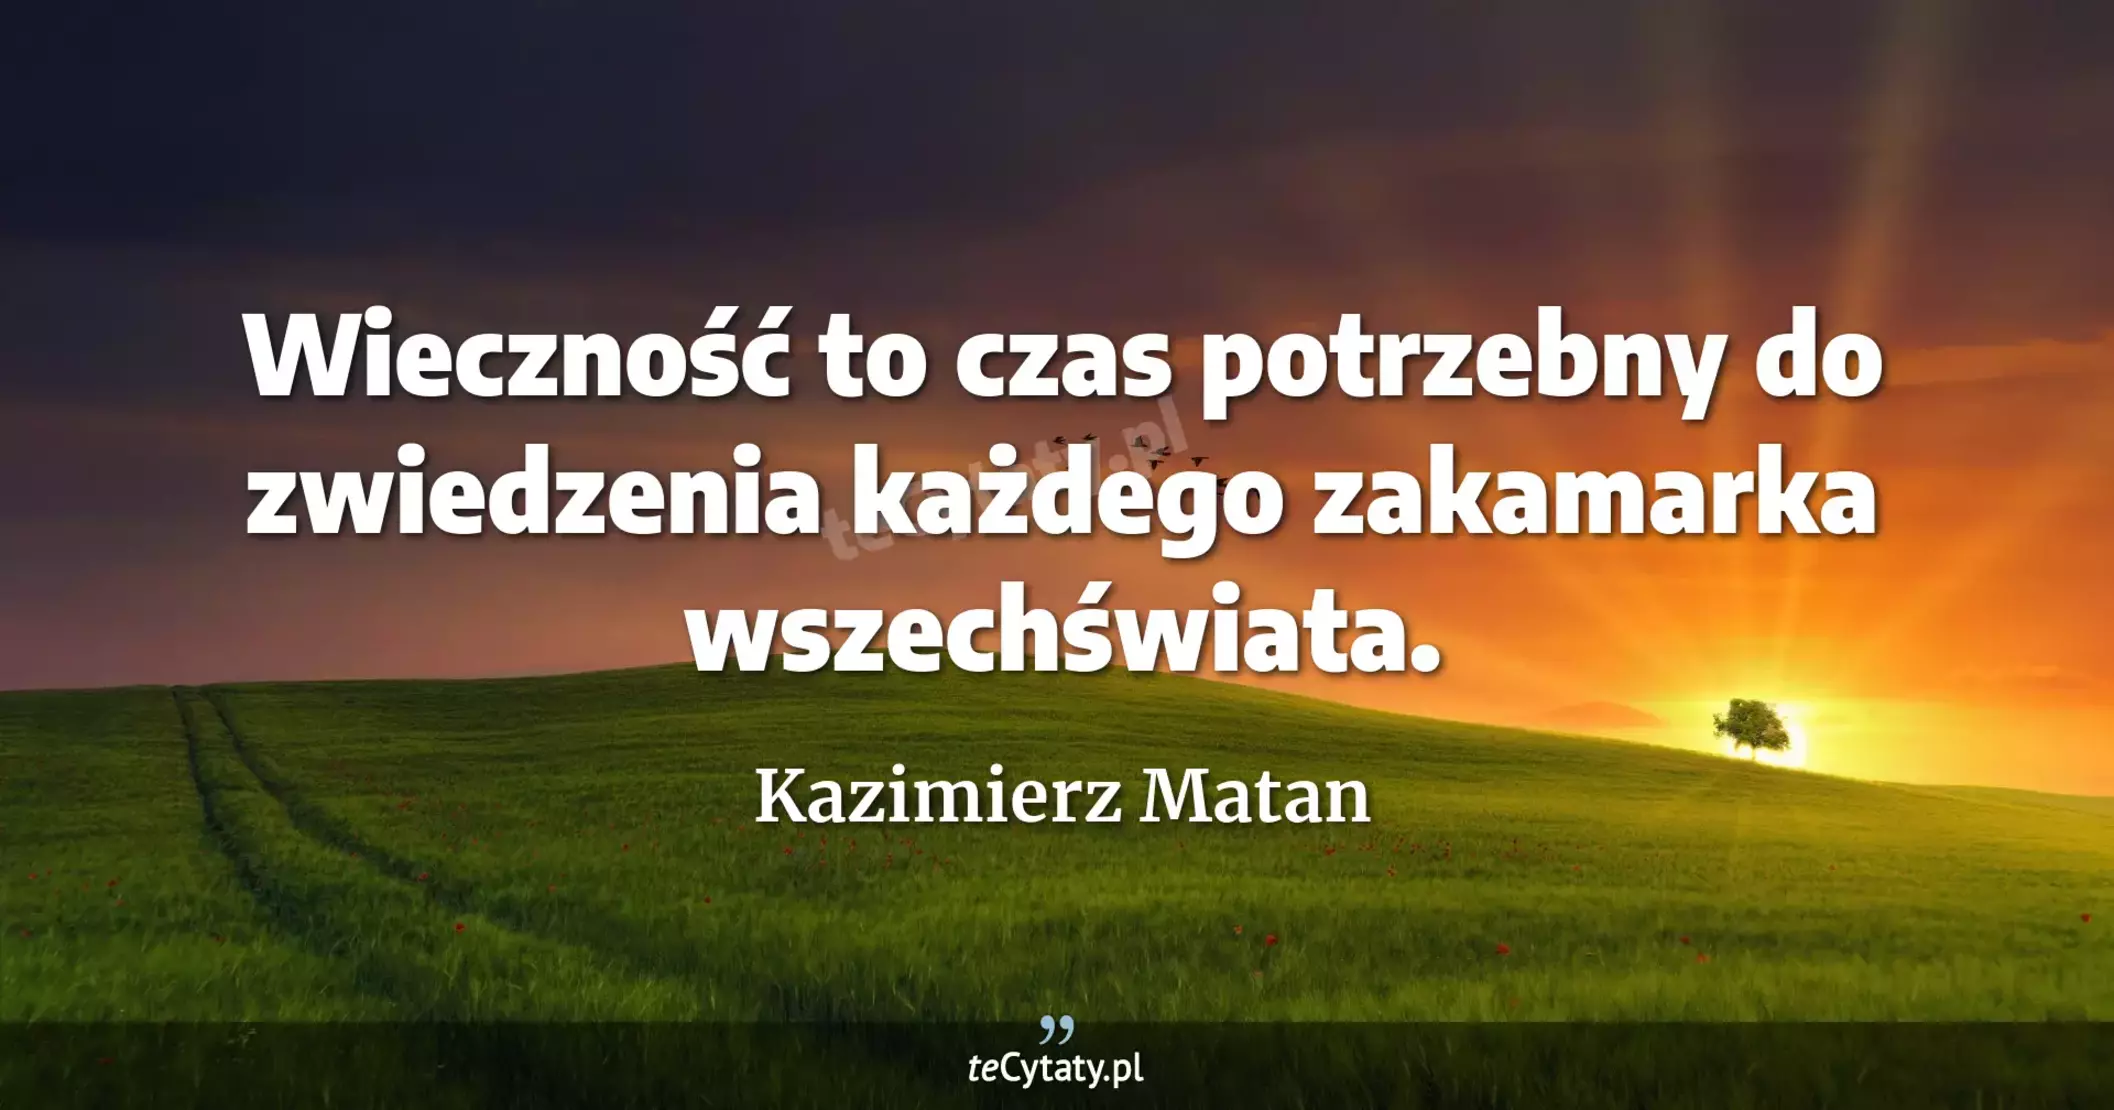 Wieczność to czas potrzebny do zwiedzenia każdego zakamarka wszechświata. - Kazimierz Matan